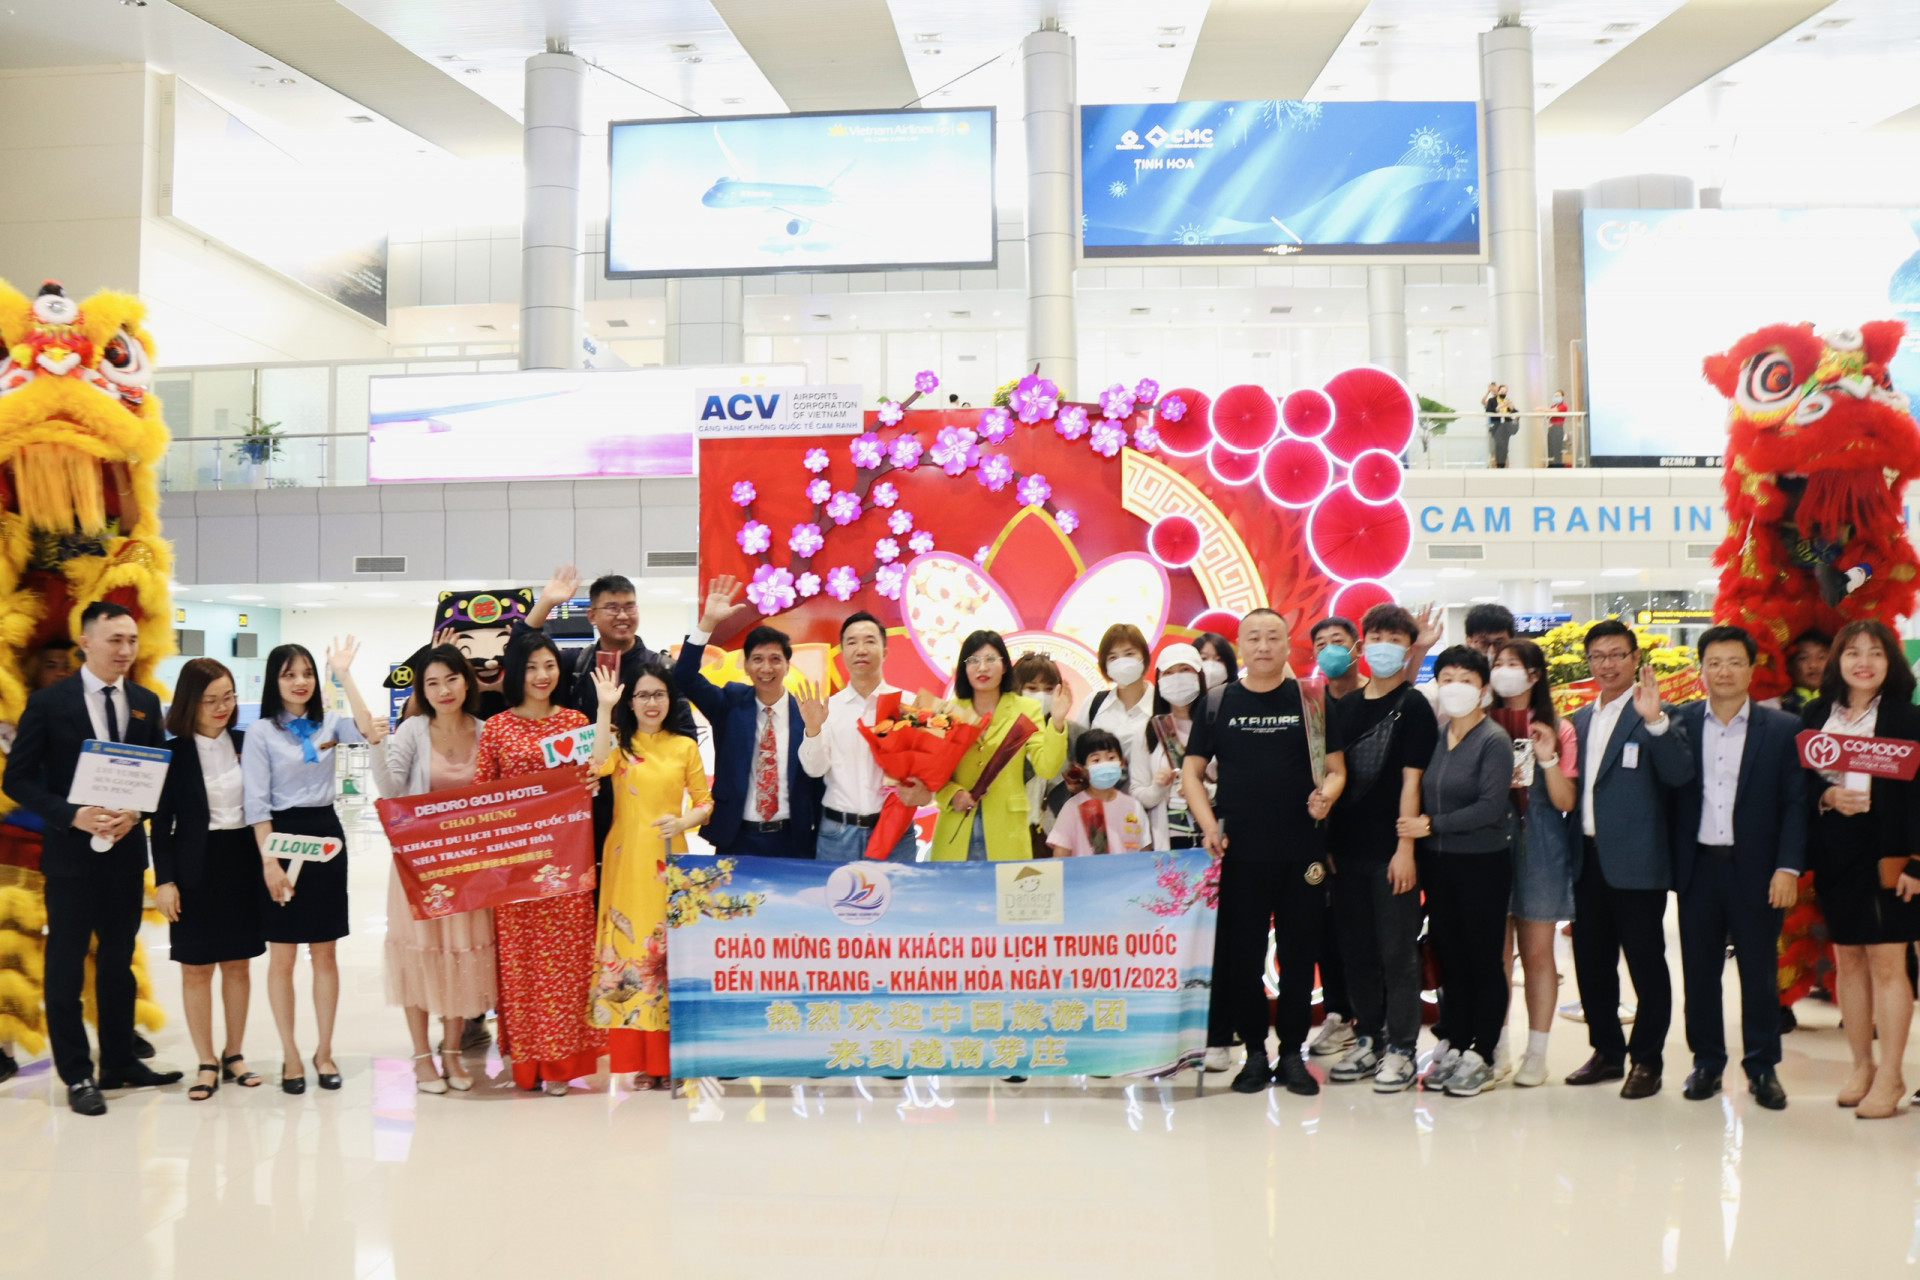 <p>Lãnh đạo Sở Du lịch, Công ty TNHH MTV Kỳ nghỉ Đà Nẵng chụp ảnh lưu niệm cùng đoàn khách du lịch Trung Quốc</p>